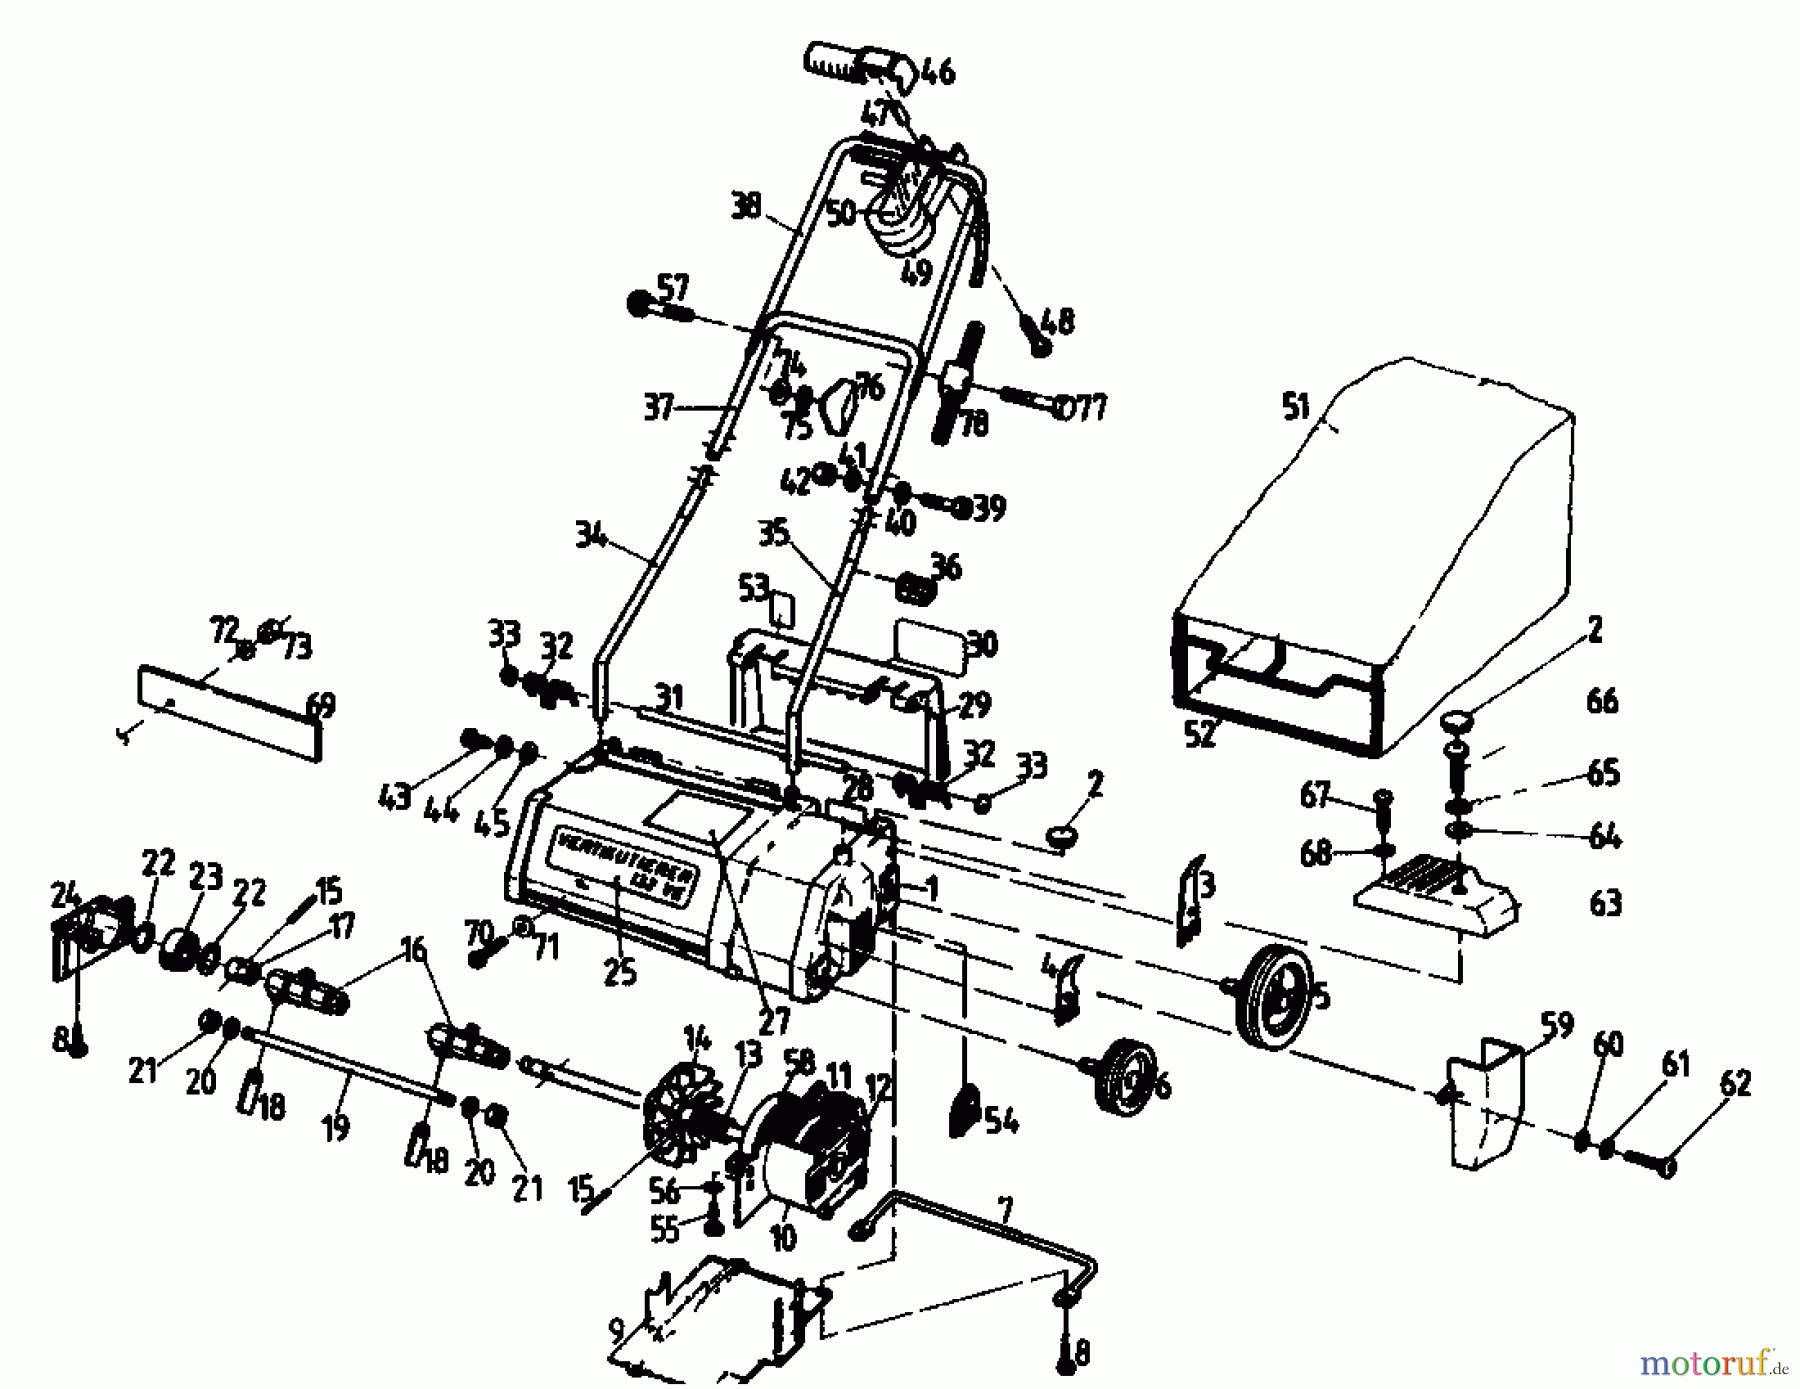  Golf Scarificateur électrique 132 VE 02846.01  (1988) Machine de base